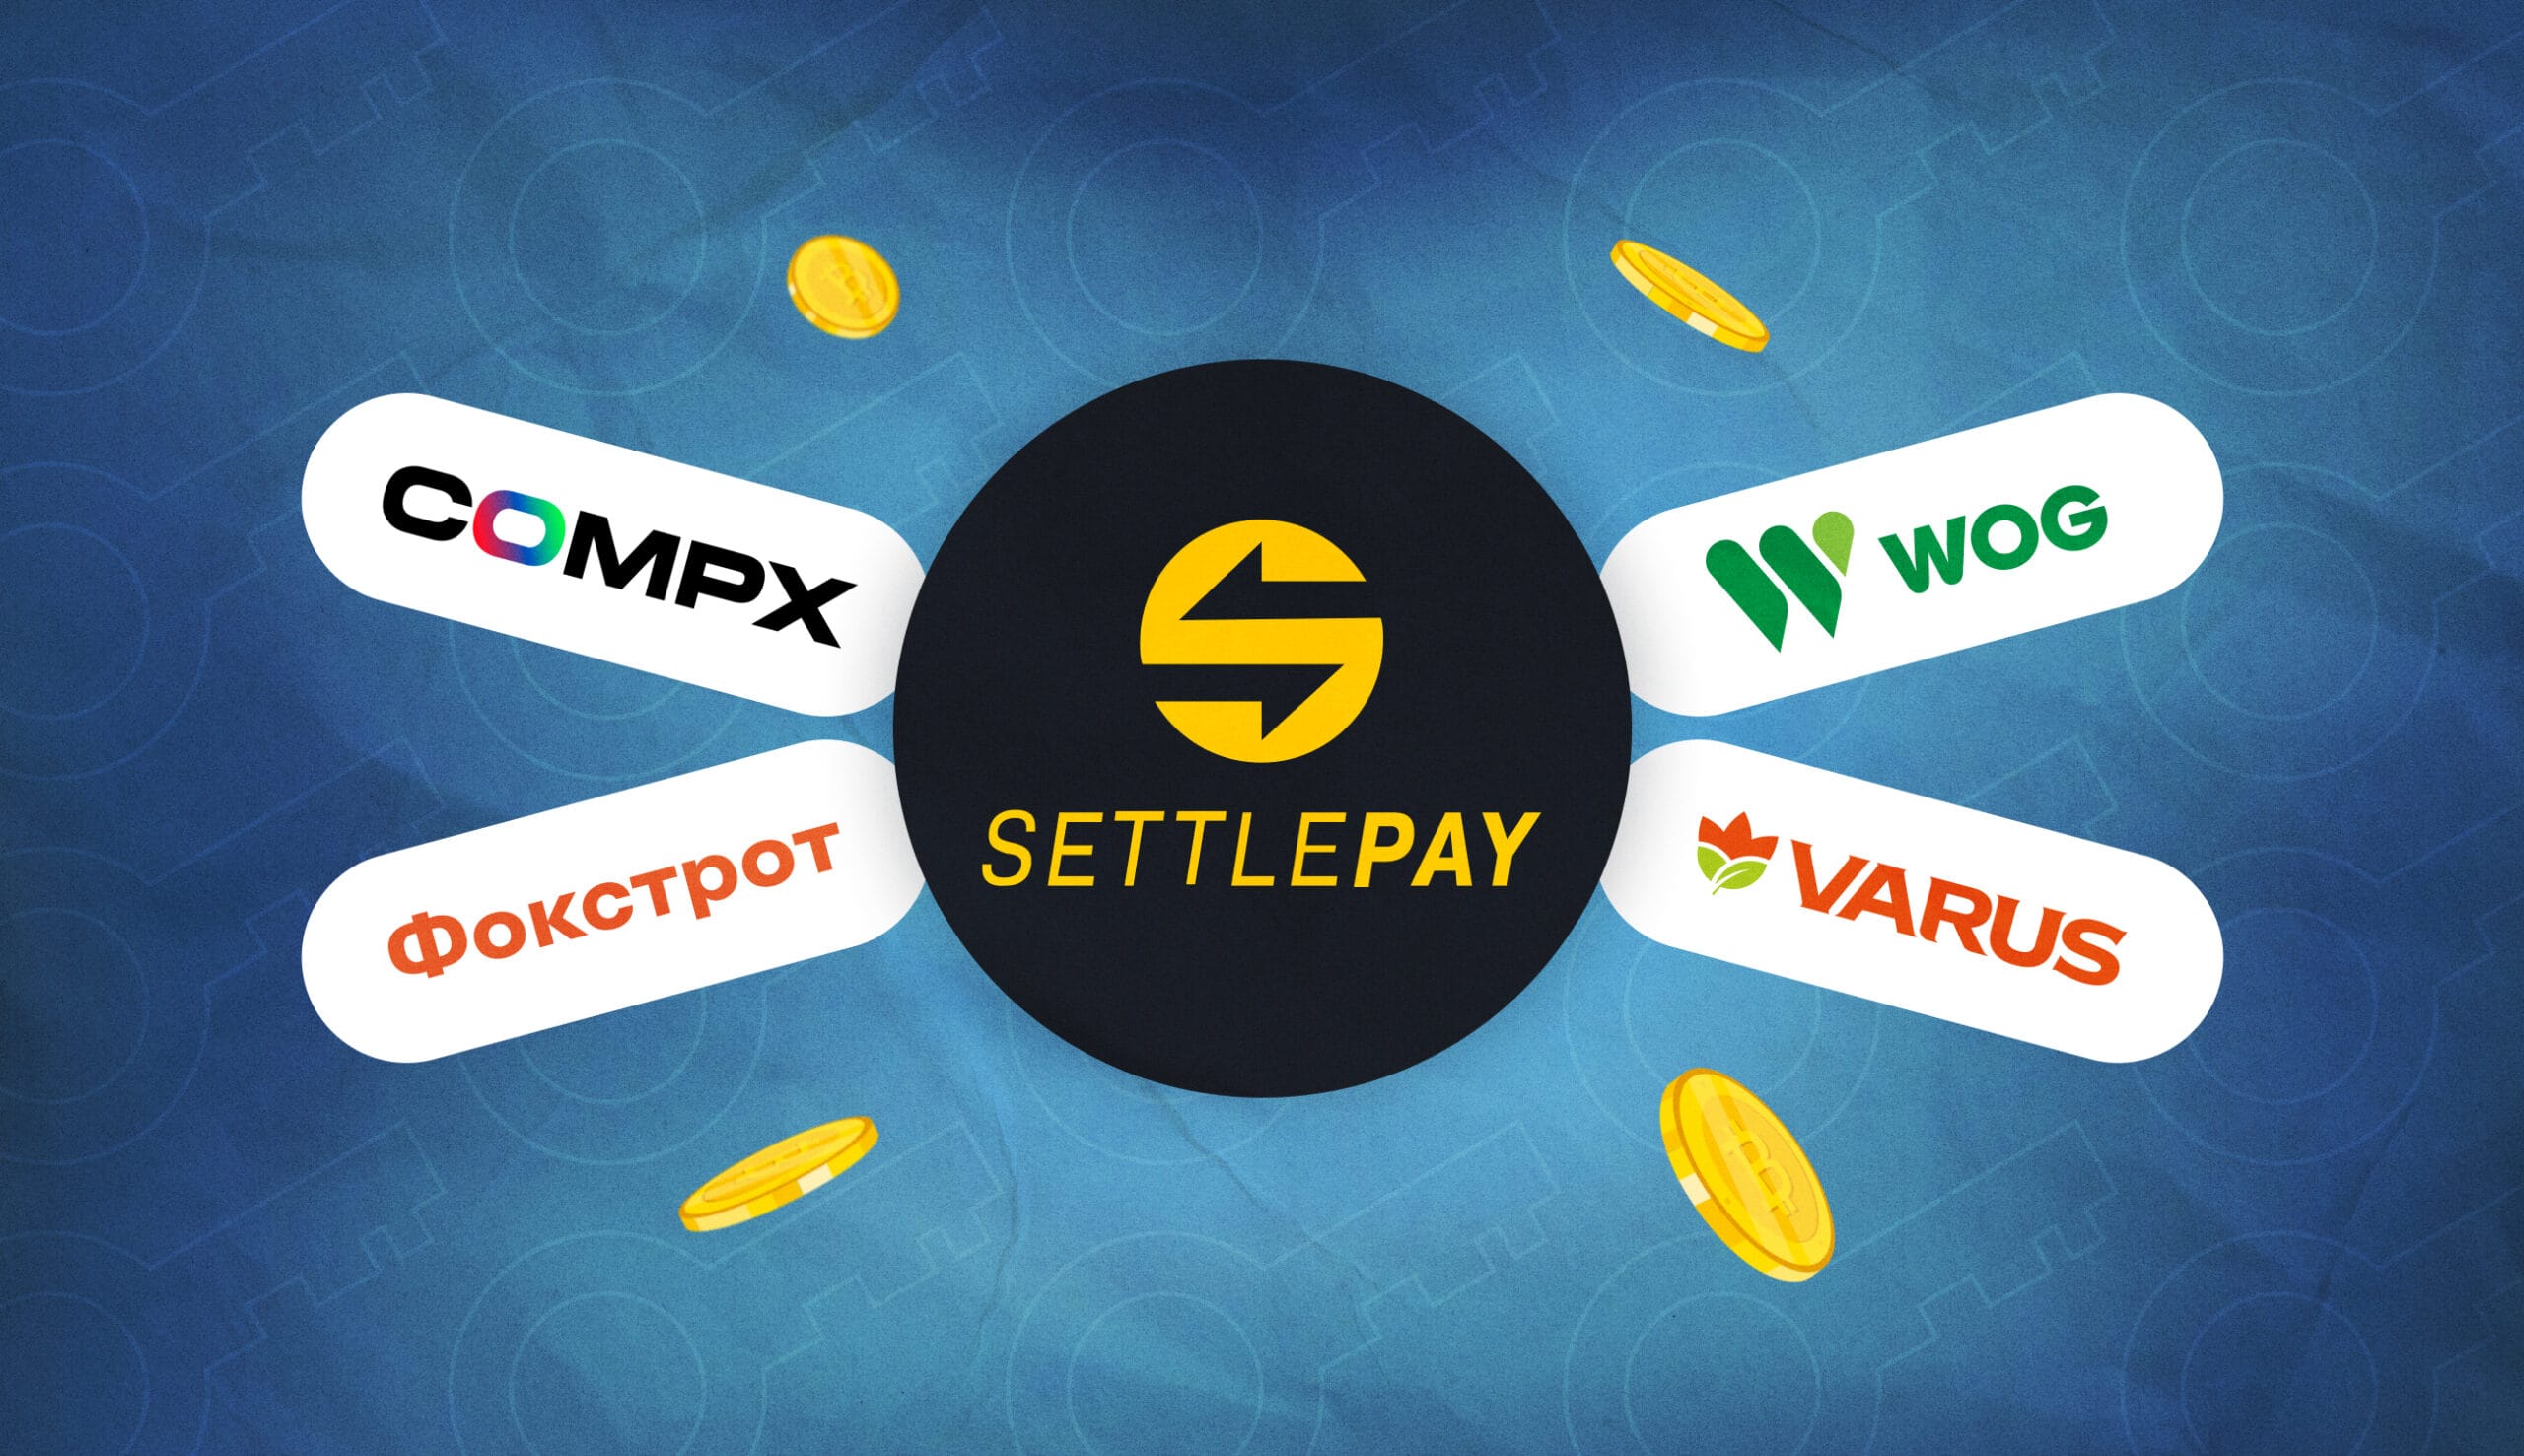 В WOG, VARUS, Фокстрот и CompX теперь можно оплатить криптой с сервисом SettlePay. Заглавный коллаж новости.